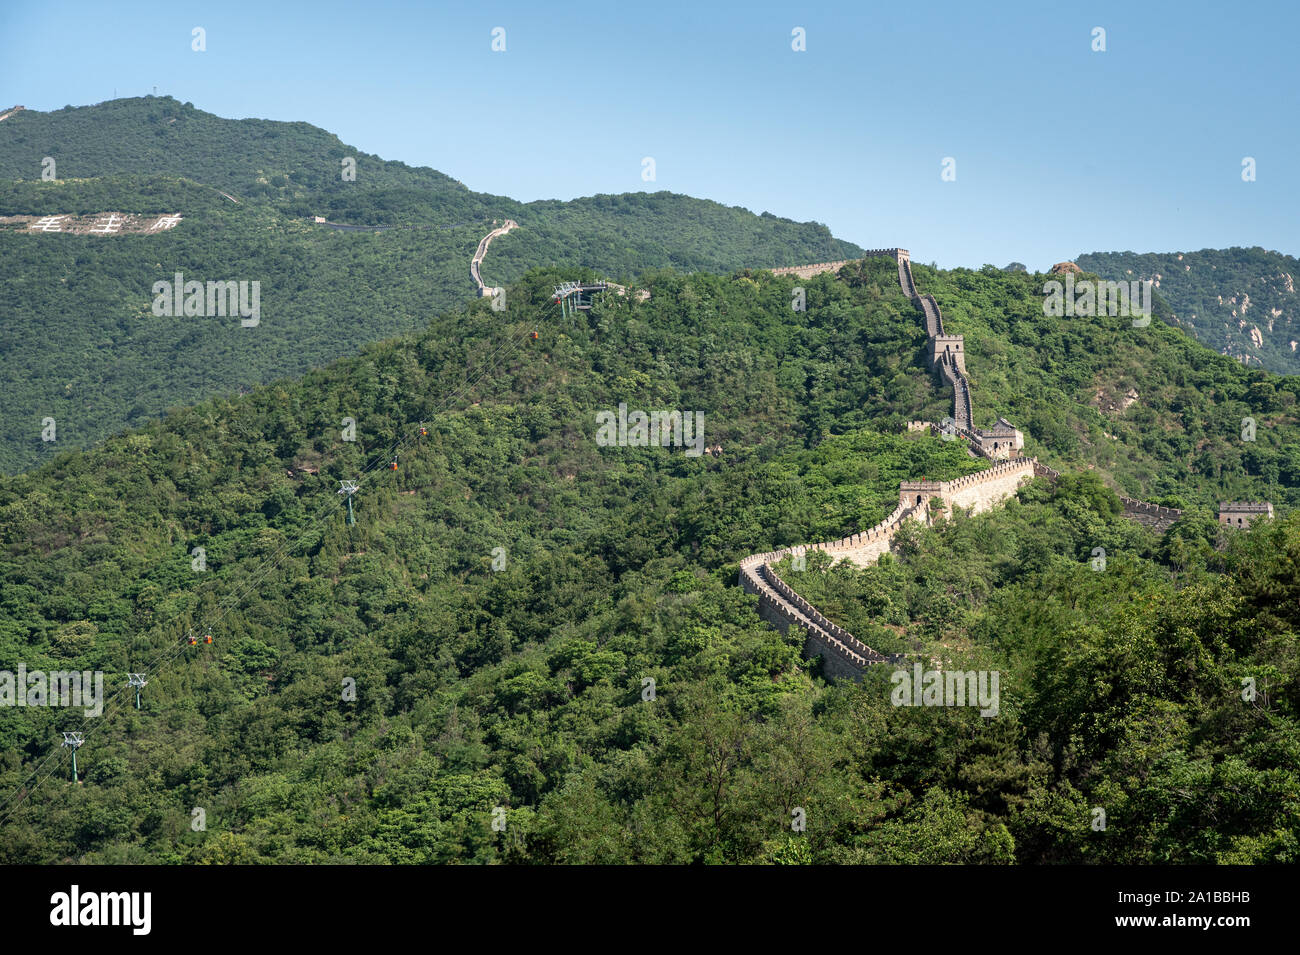 La famosa muraglia cinese, una delle sette meraviglie del mondo in corrispondenza della sezione Mutianyu fuori Pechino. Foto Stock